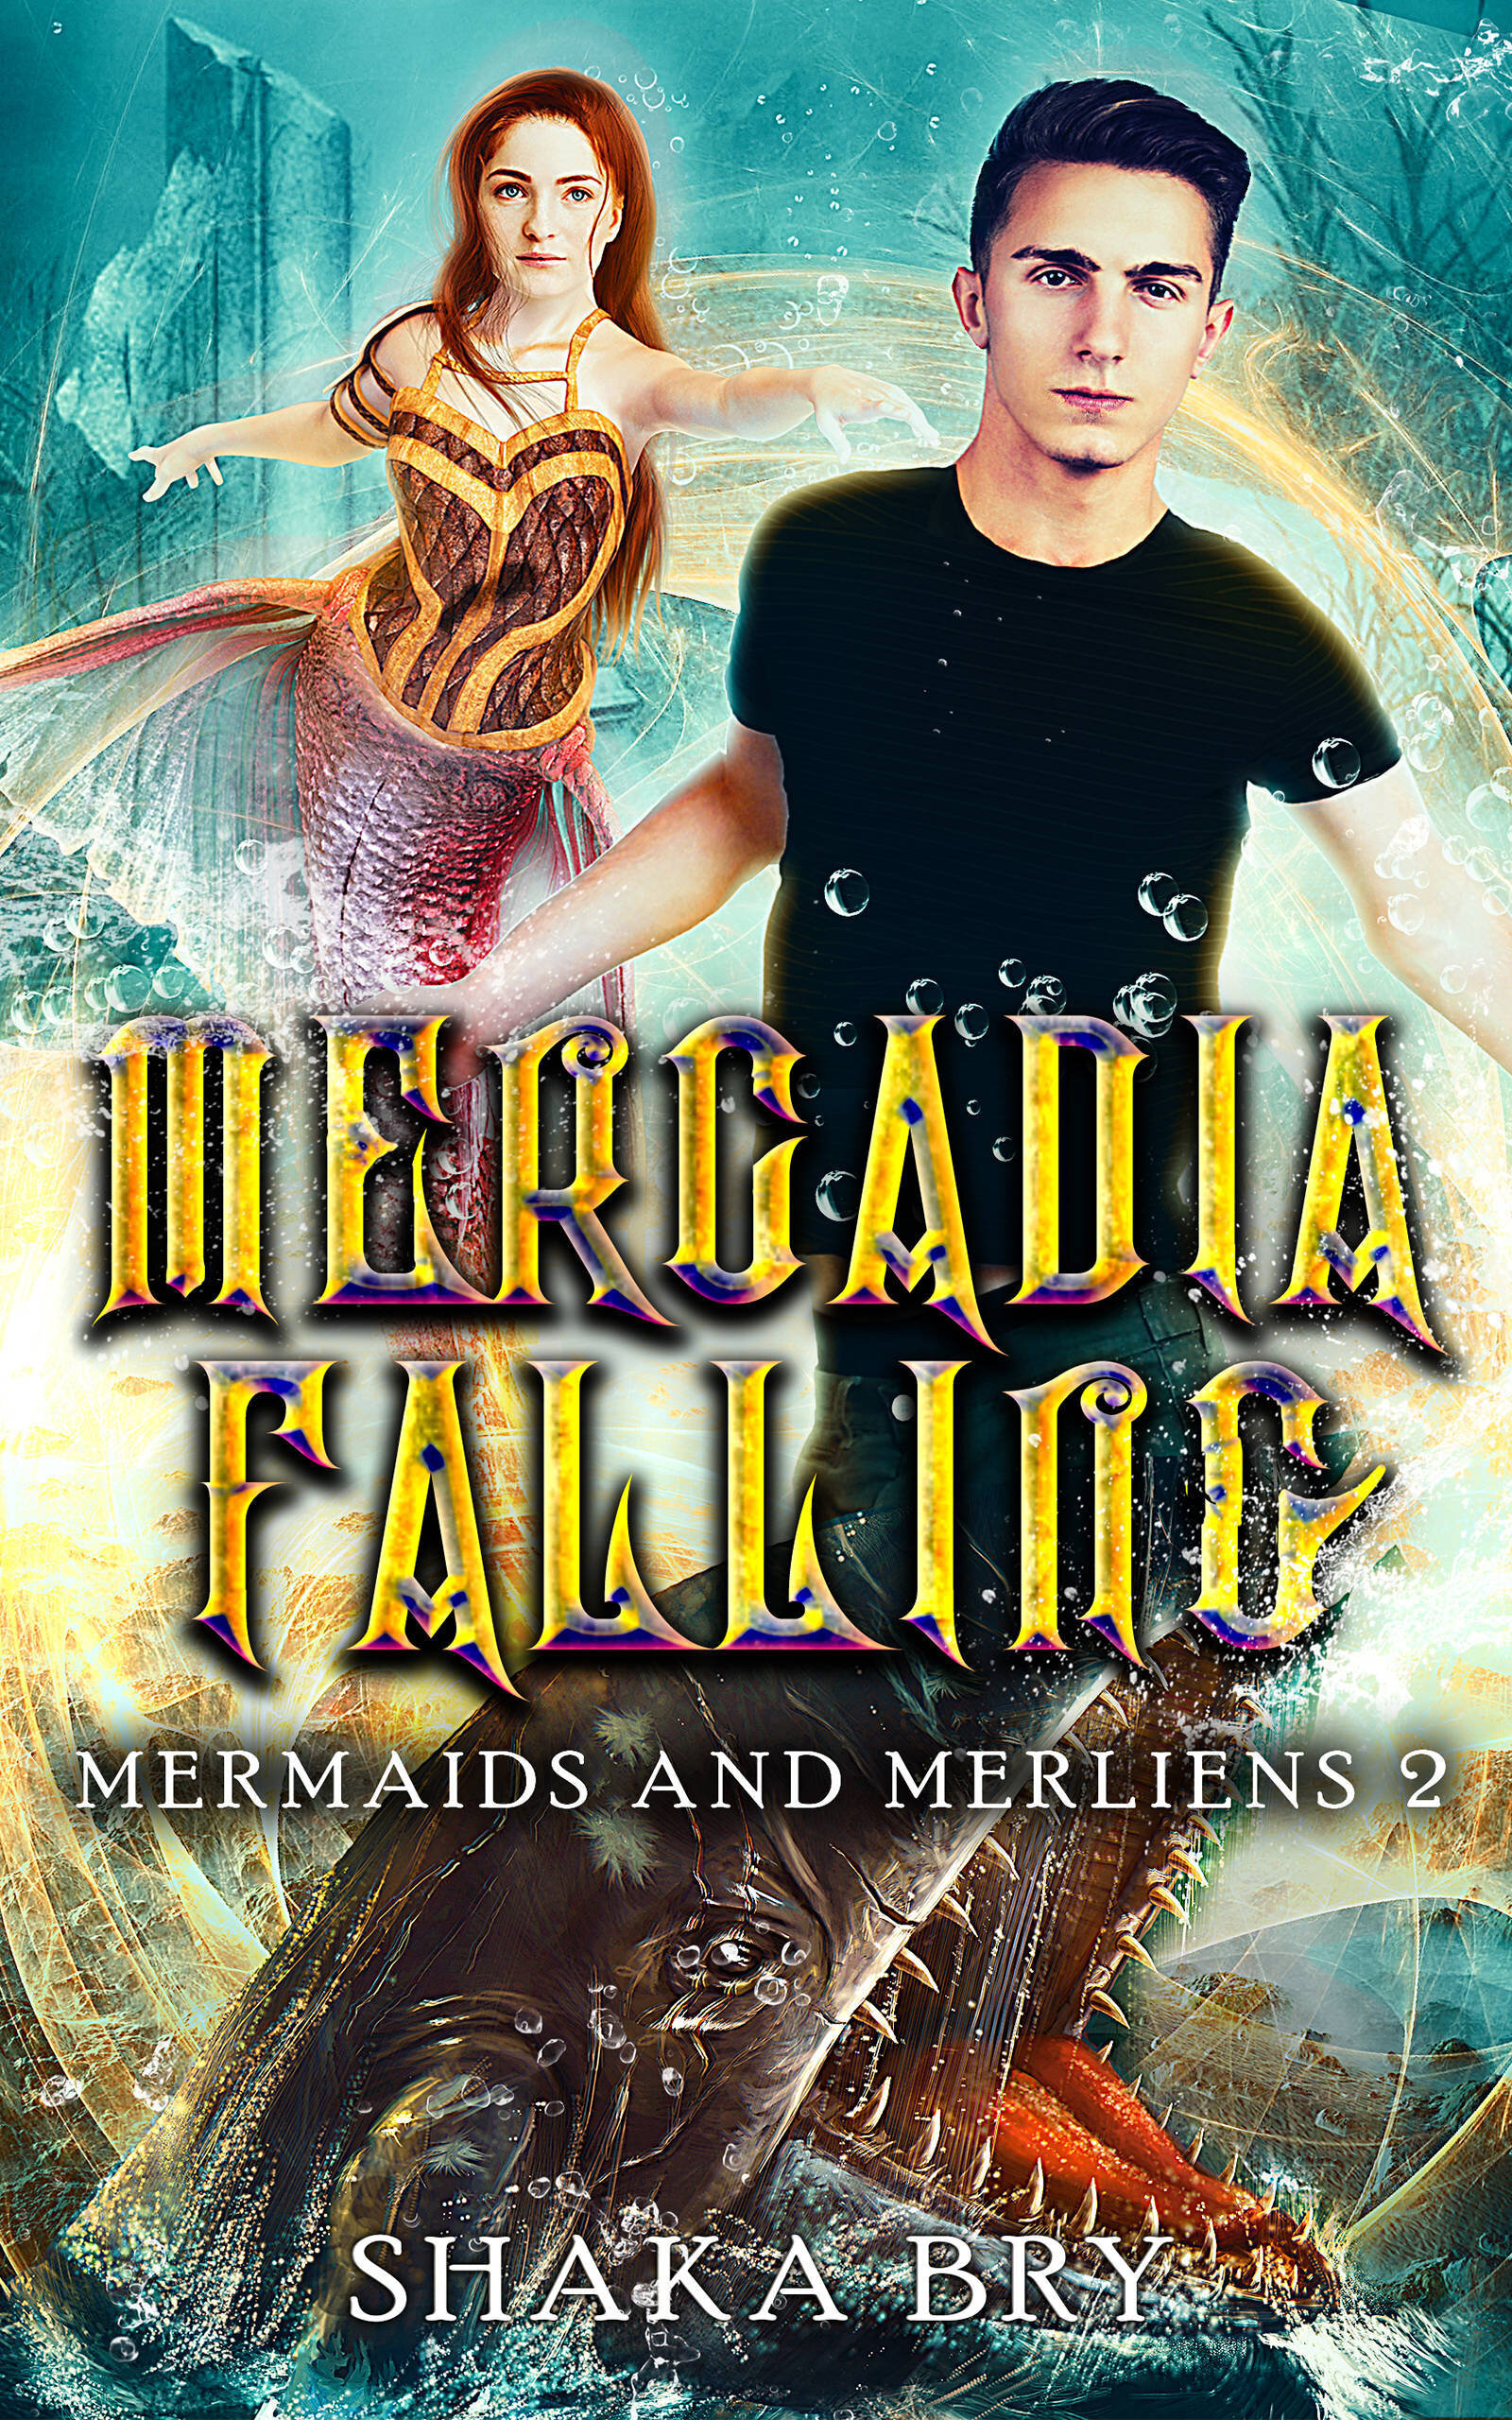 02-Mercadia-Falling-Kindle-Amazon.jpg